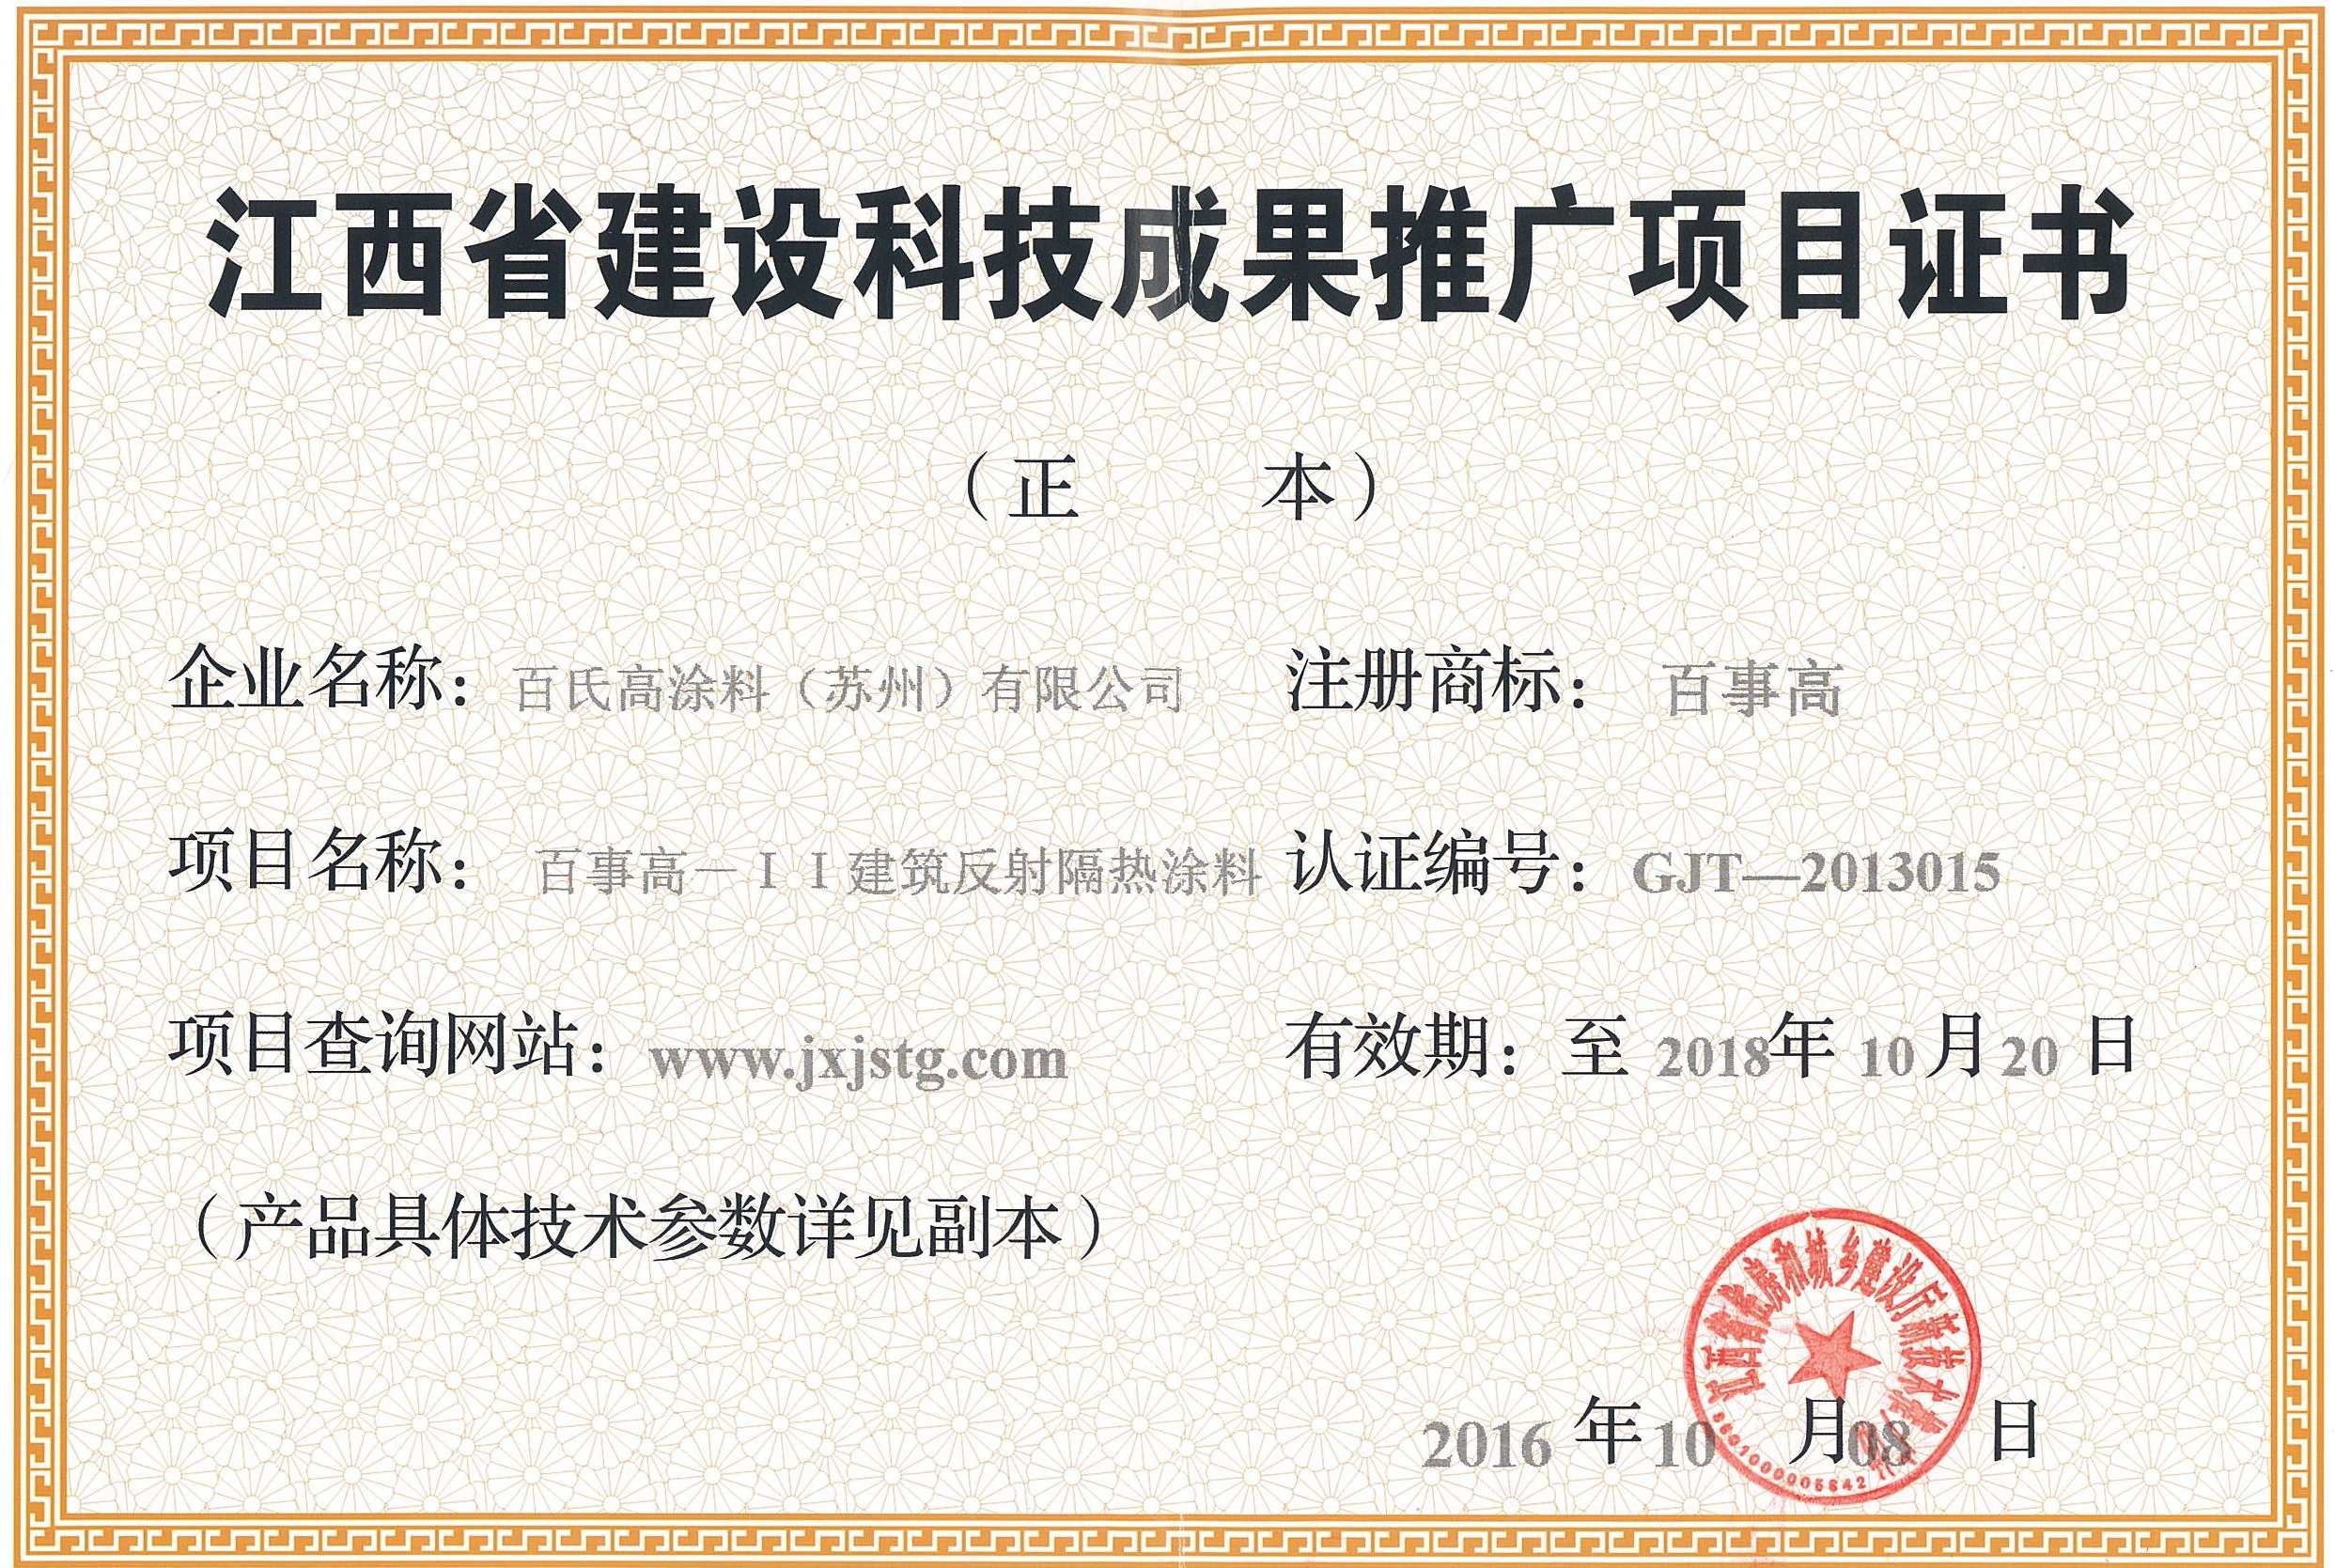 江西省建设科技成果推广项目证书